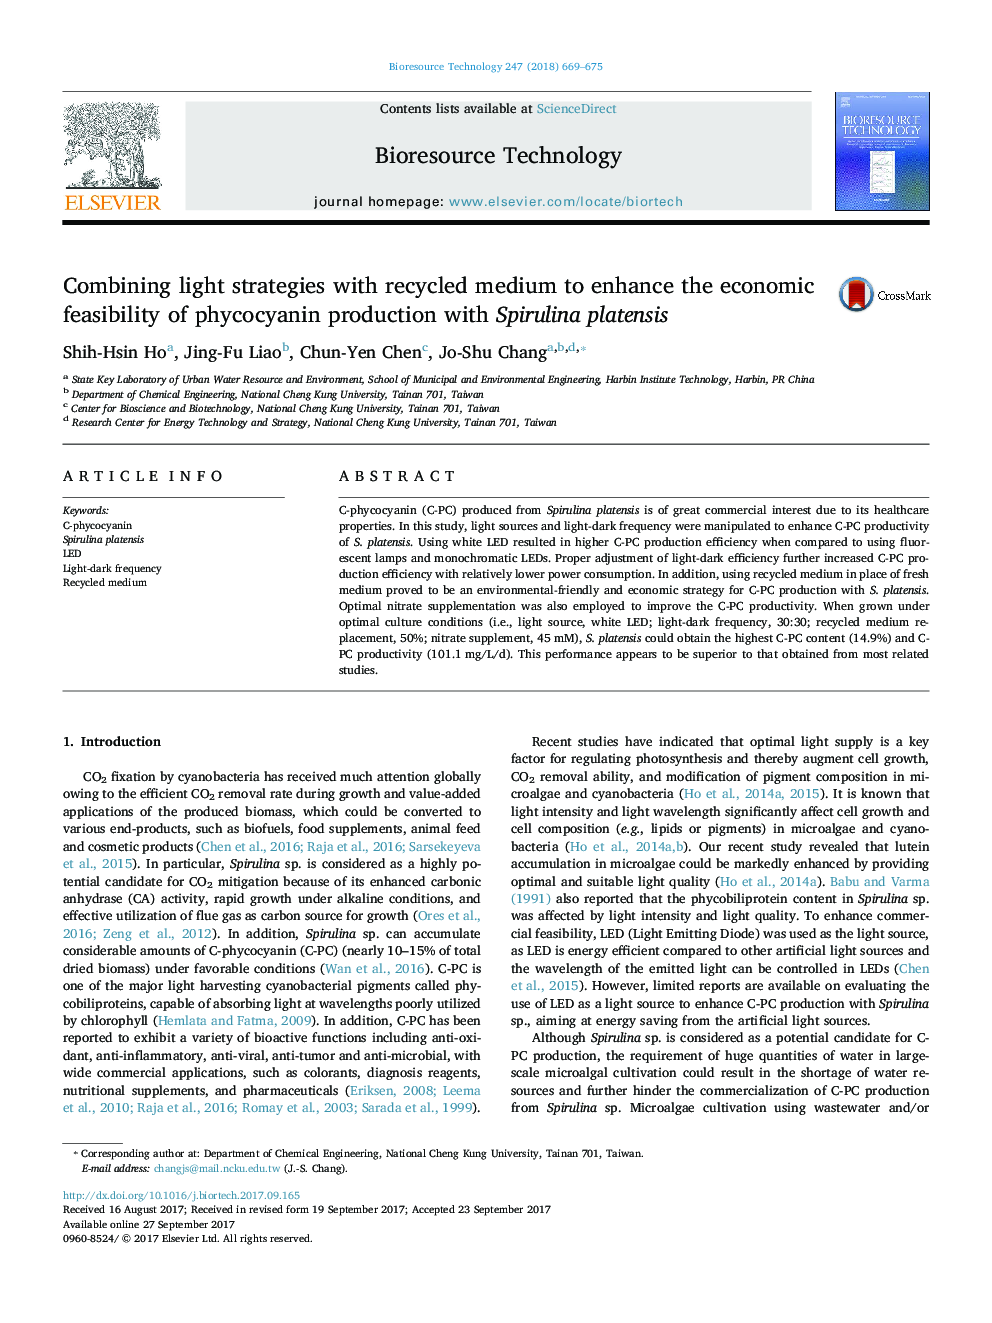 ترکیب استراتژی های نور با محیط بازیافتی برای افزایش قابلیت اقتصادی تولید فایکوسیانین با Spirulina platensis